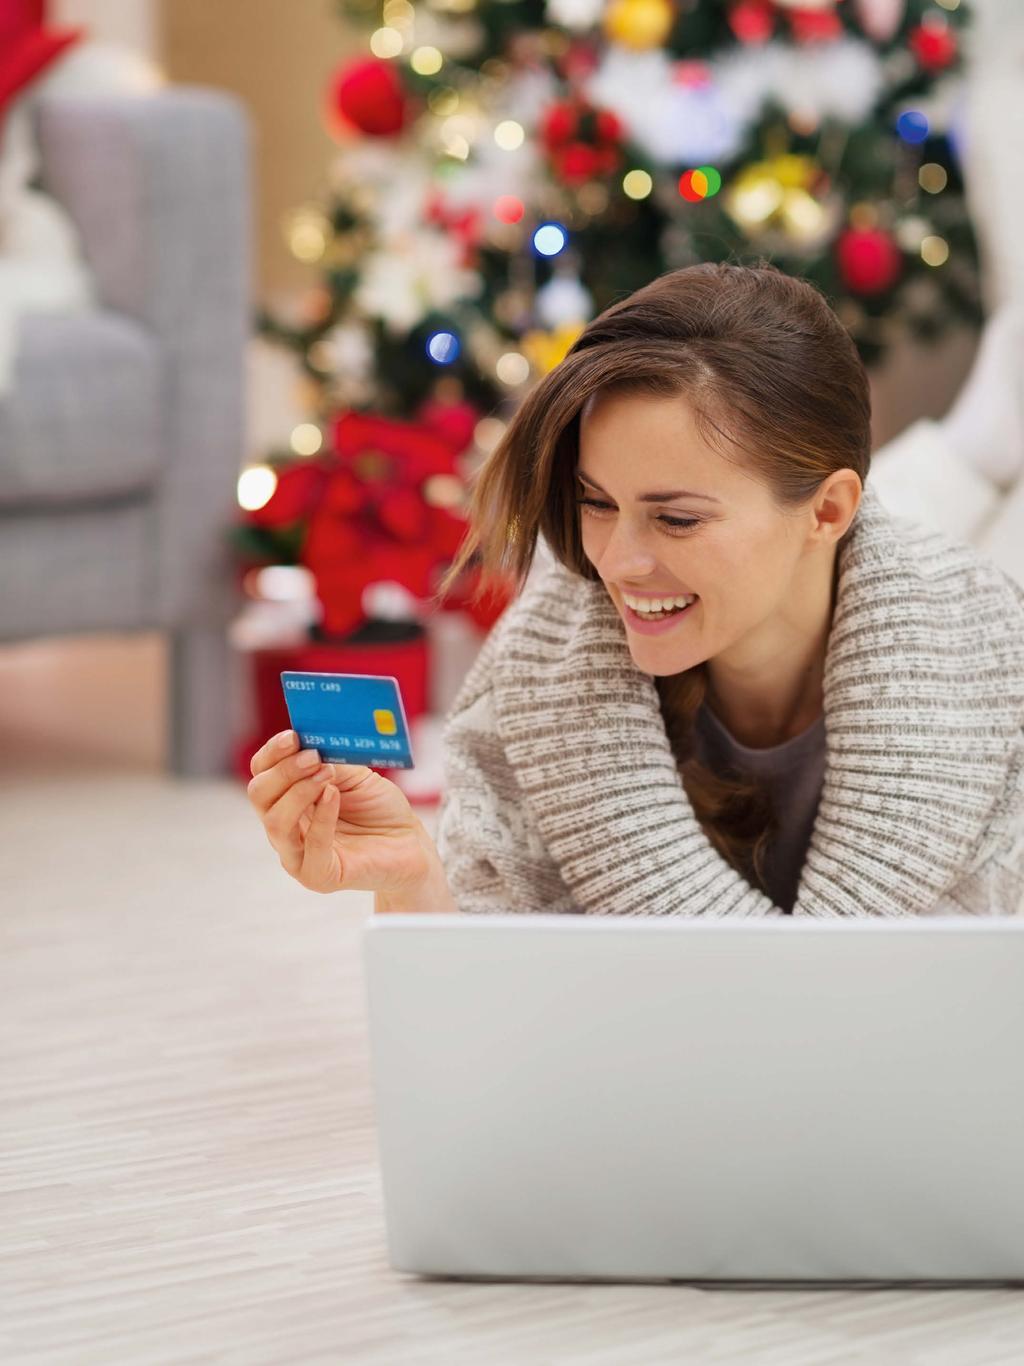 Életmód Ajándékok a netről VIRTUÁLIS PLÁZAJÁRÁS A weben vásárolni kényelmes és időtakarékos dolog különösen karácsony előtt, amikor óriási a forgalom a bevásárlóközpontokban.